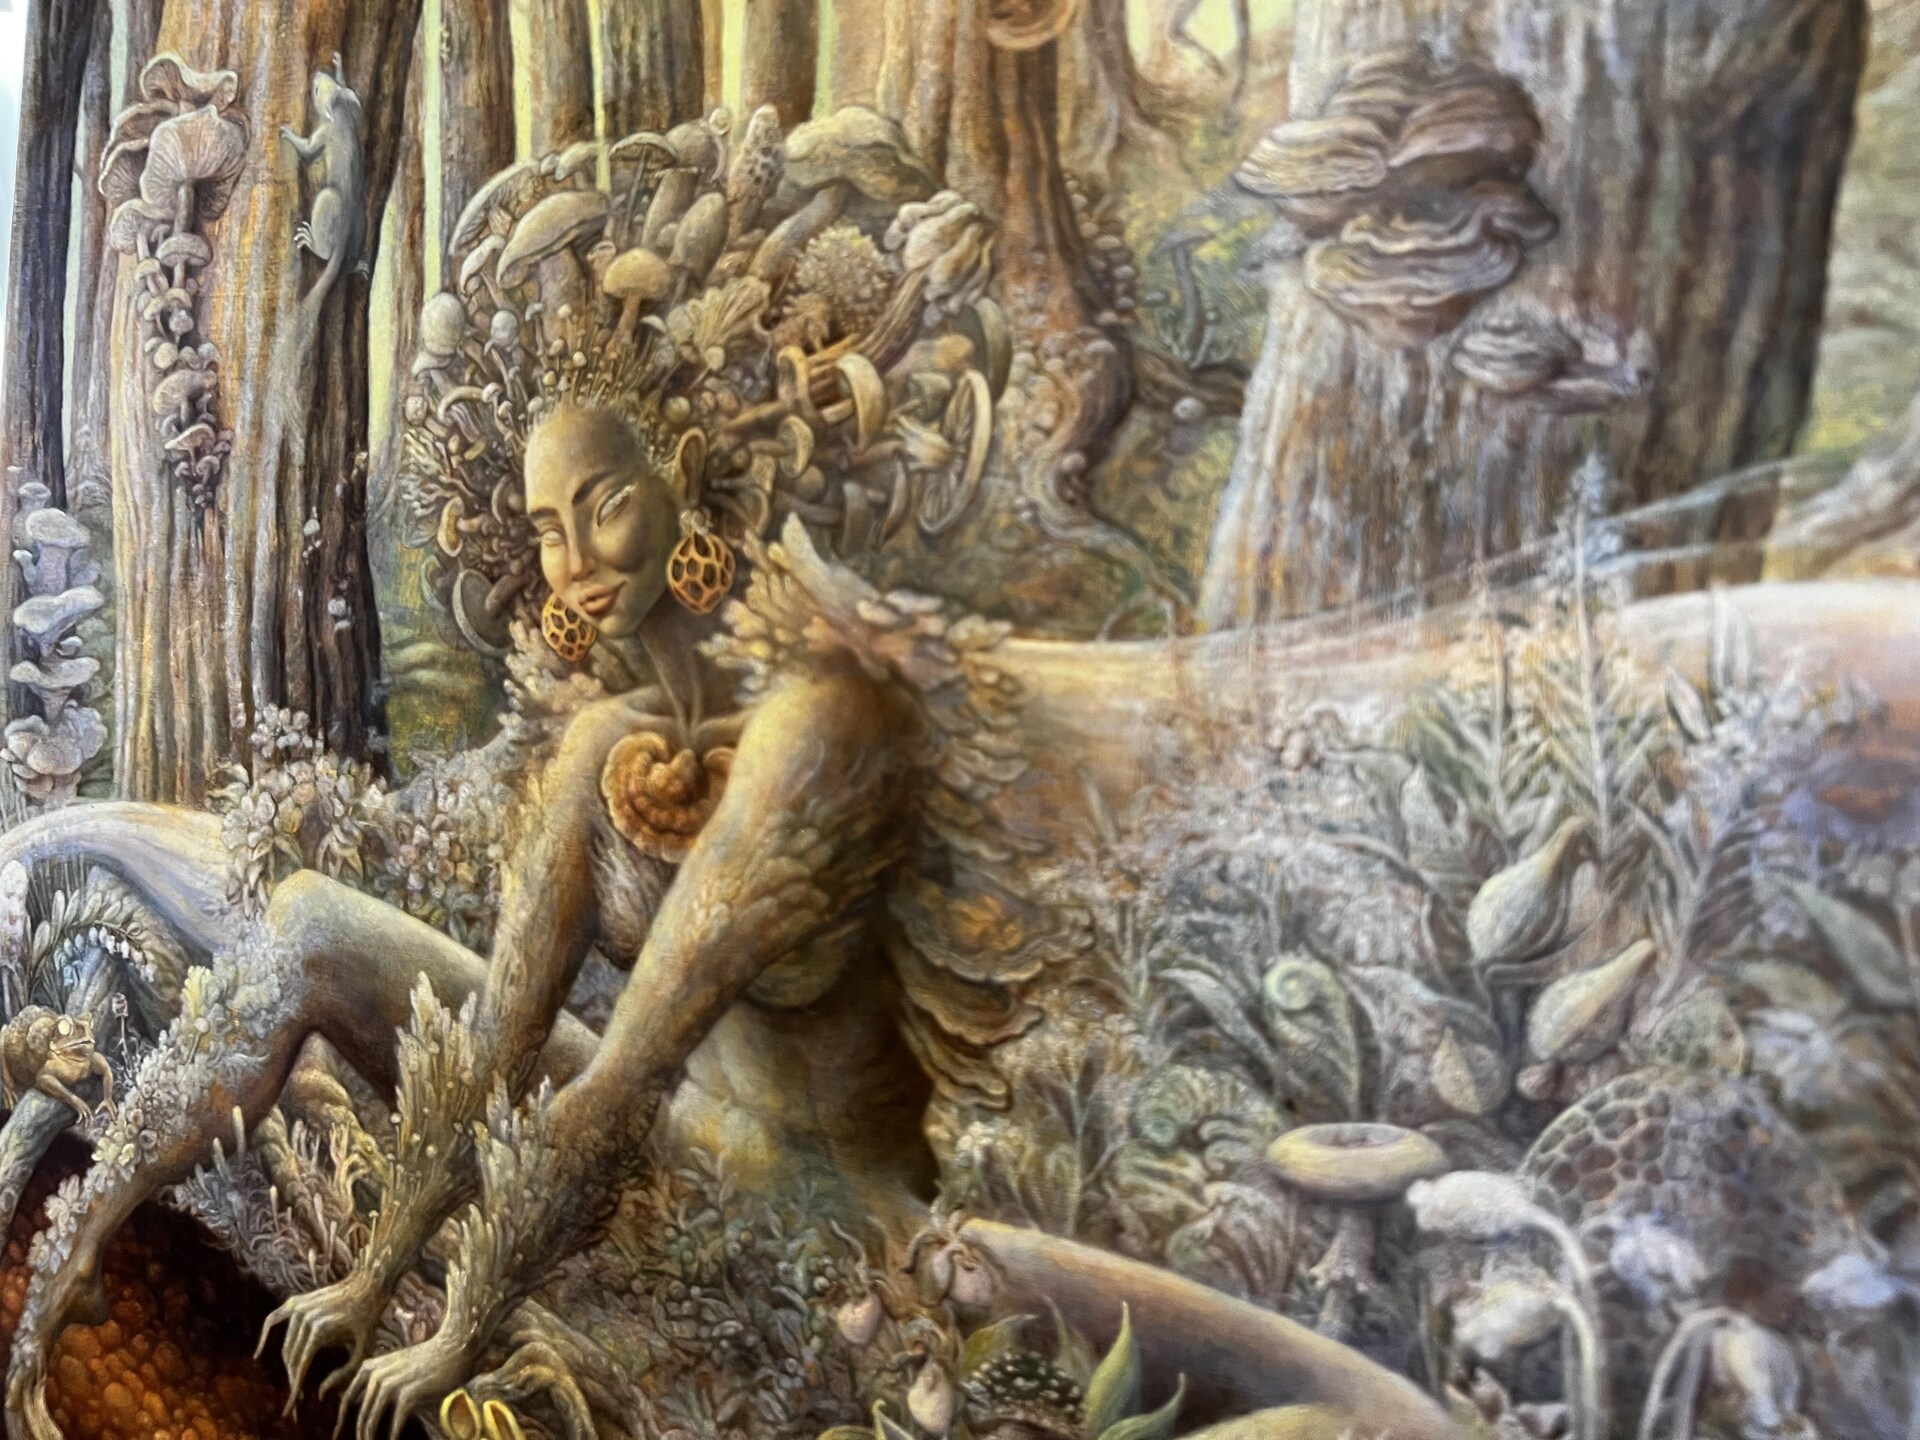 Sur une toile, un personnage féminin, la déesse des champignons. La déesse, qui est par terre, a une chevelure constituée de champignons de toutes sortes.
